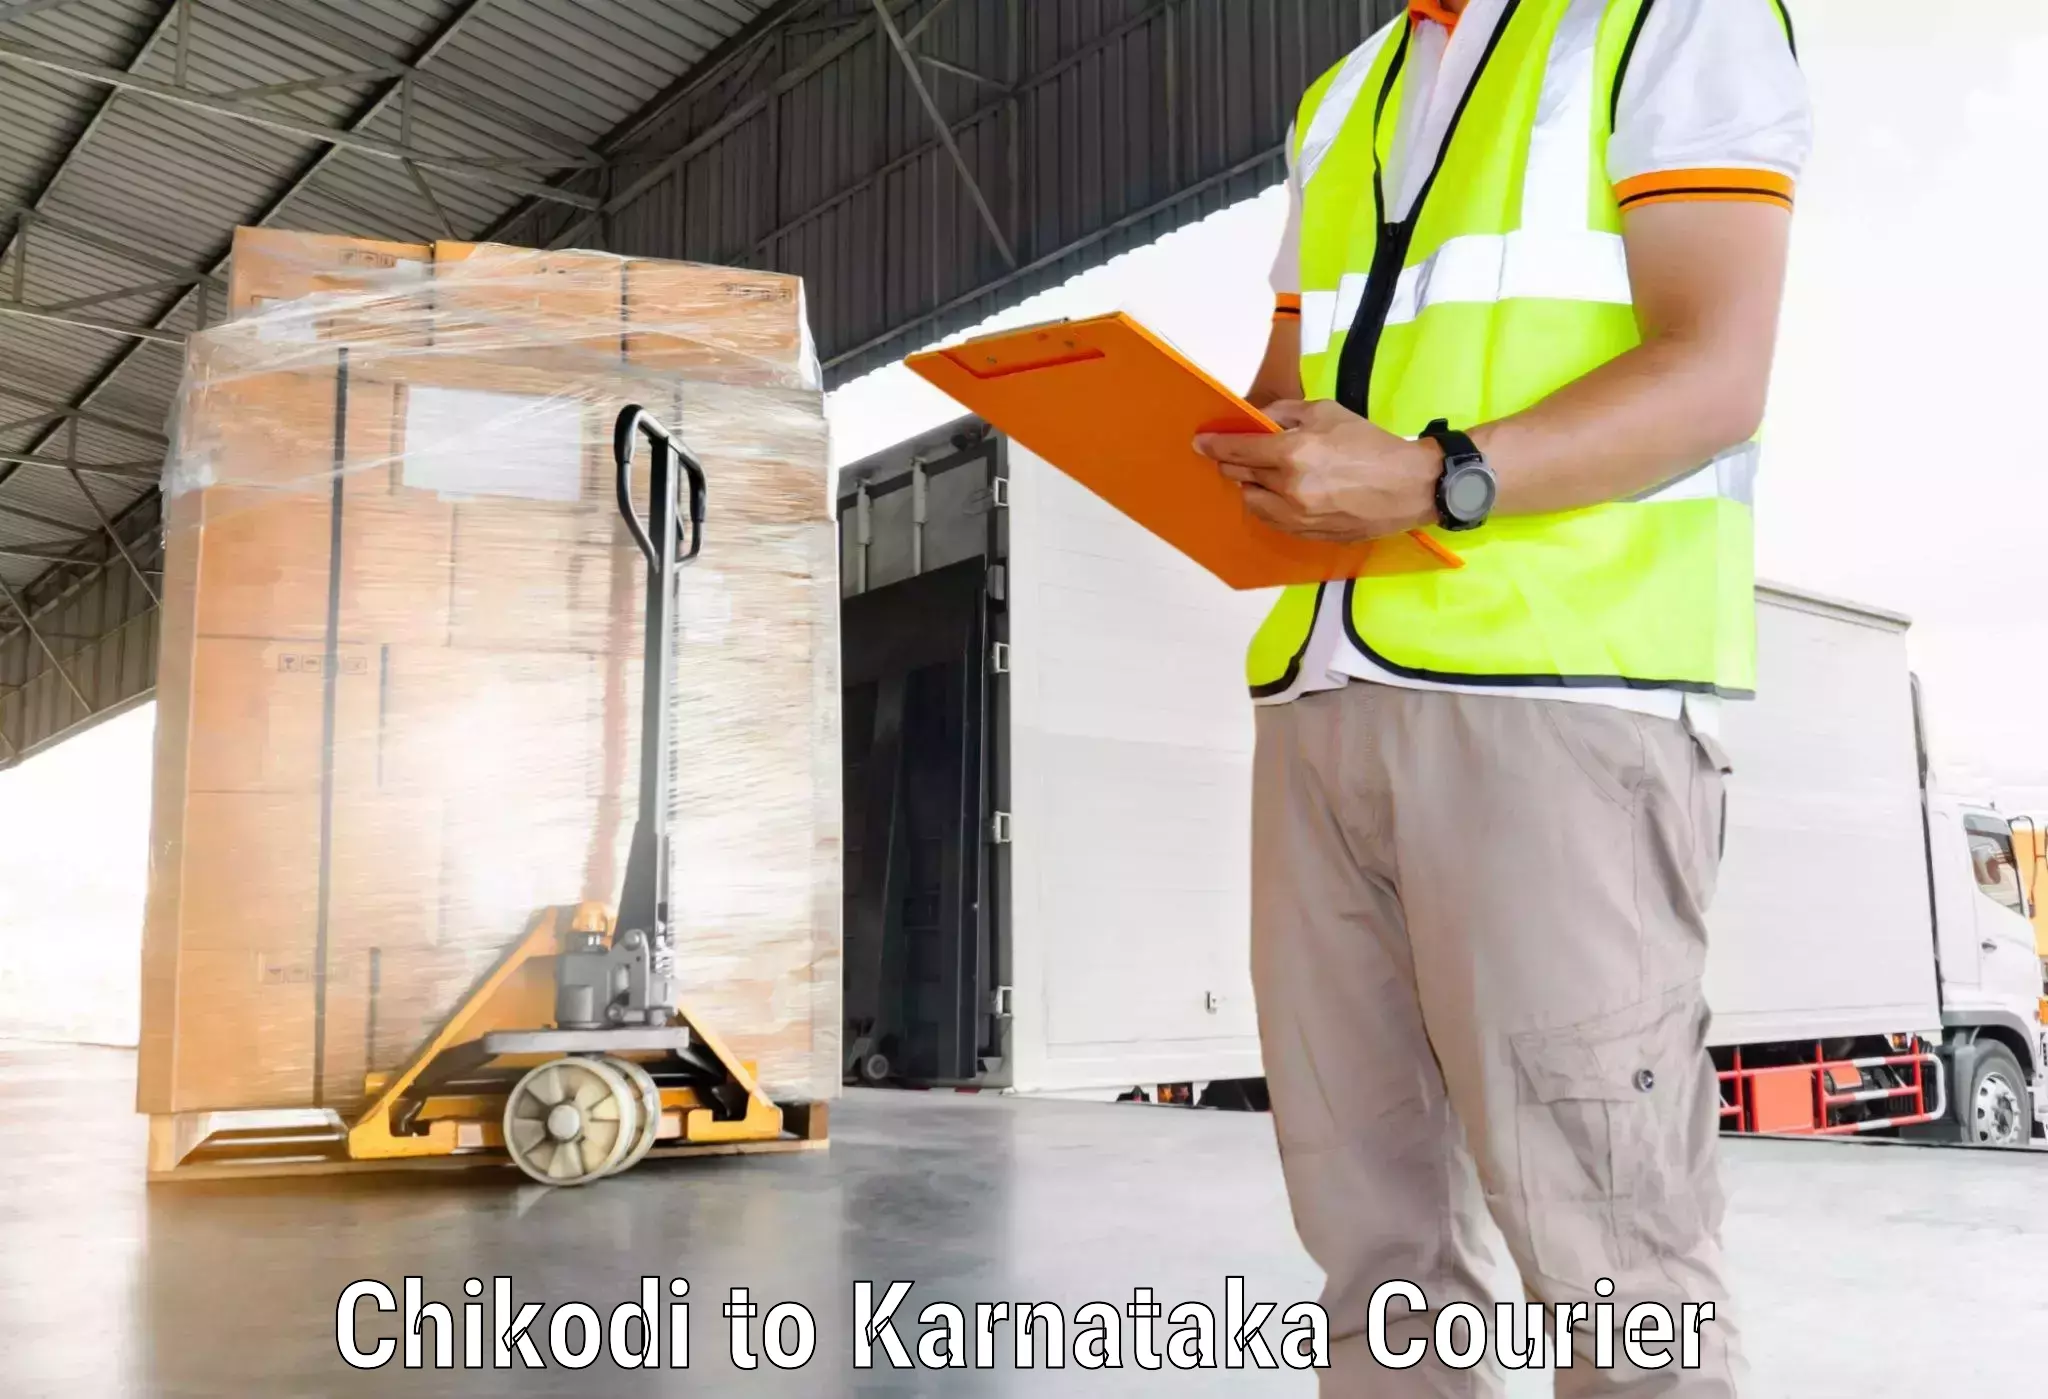 Global freight services Chikodi to Kanjarakatte